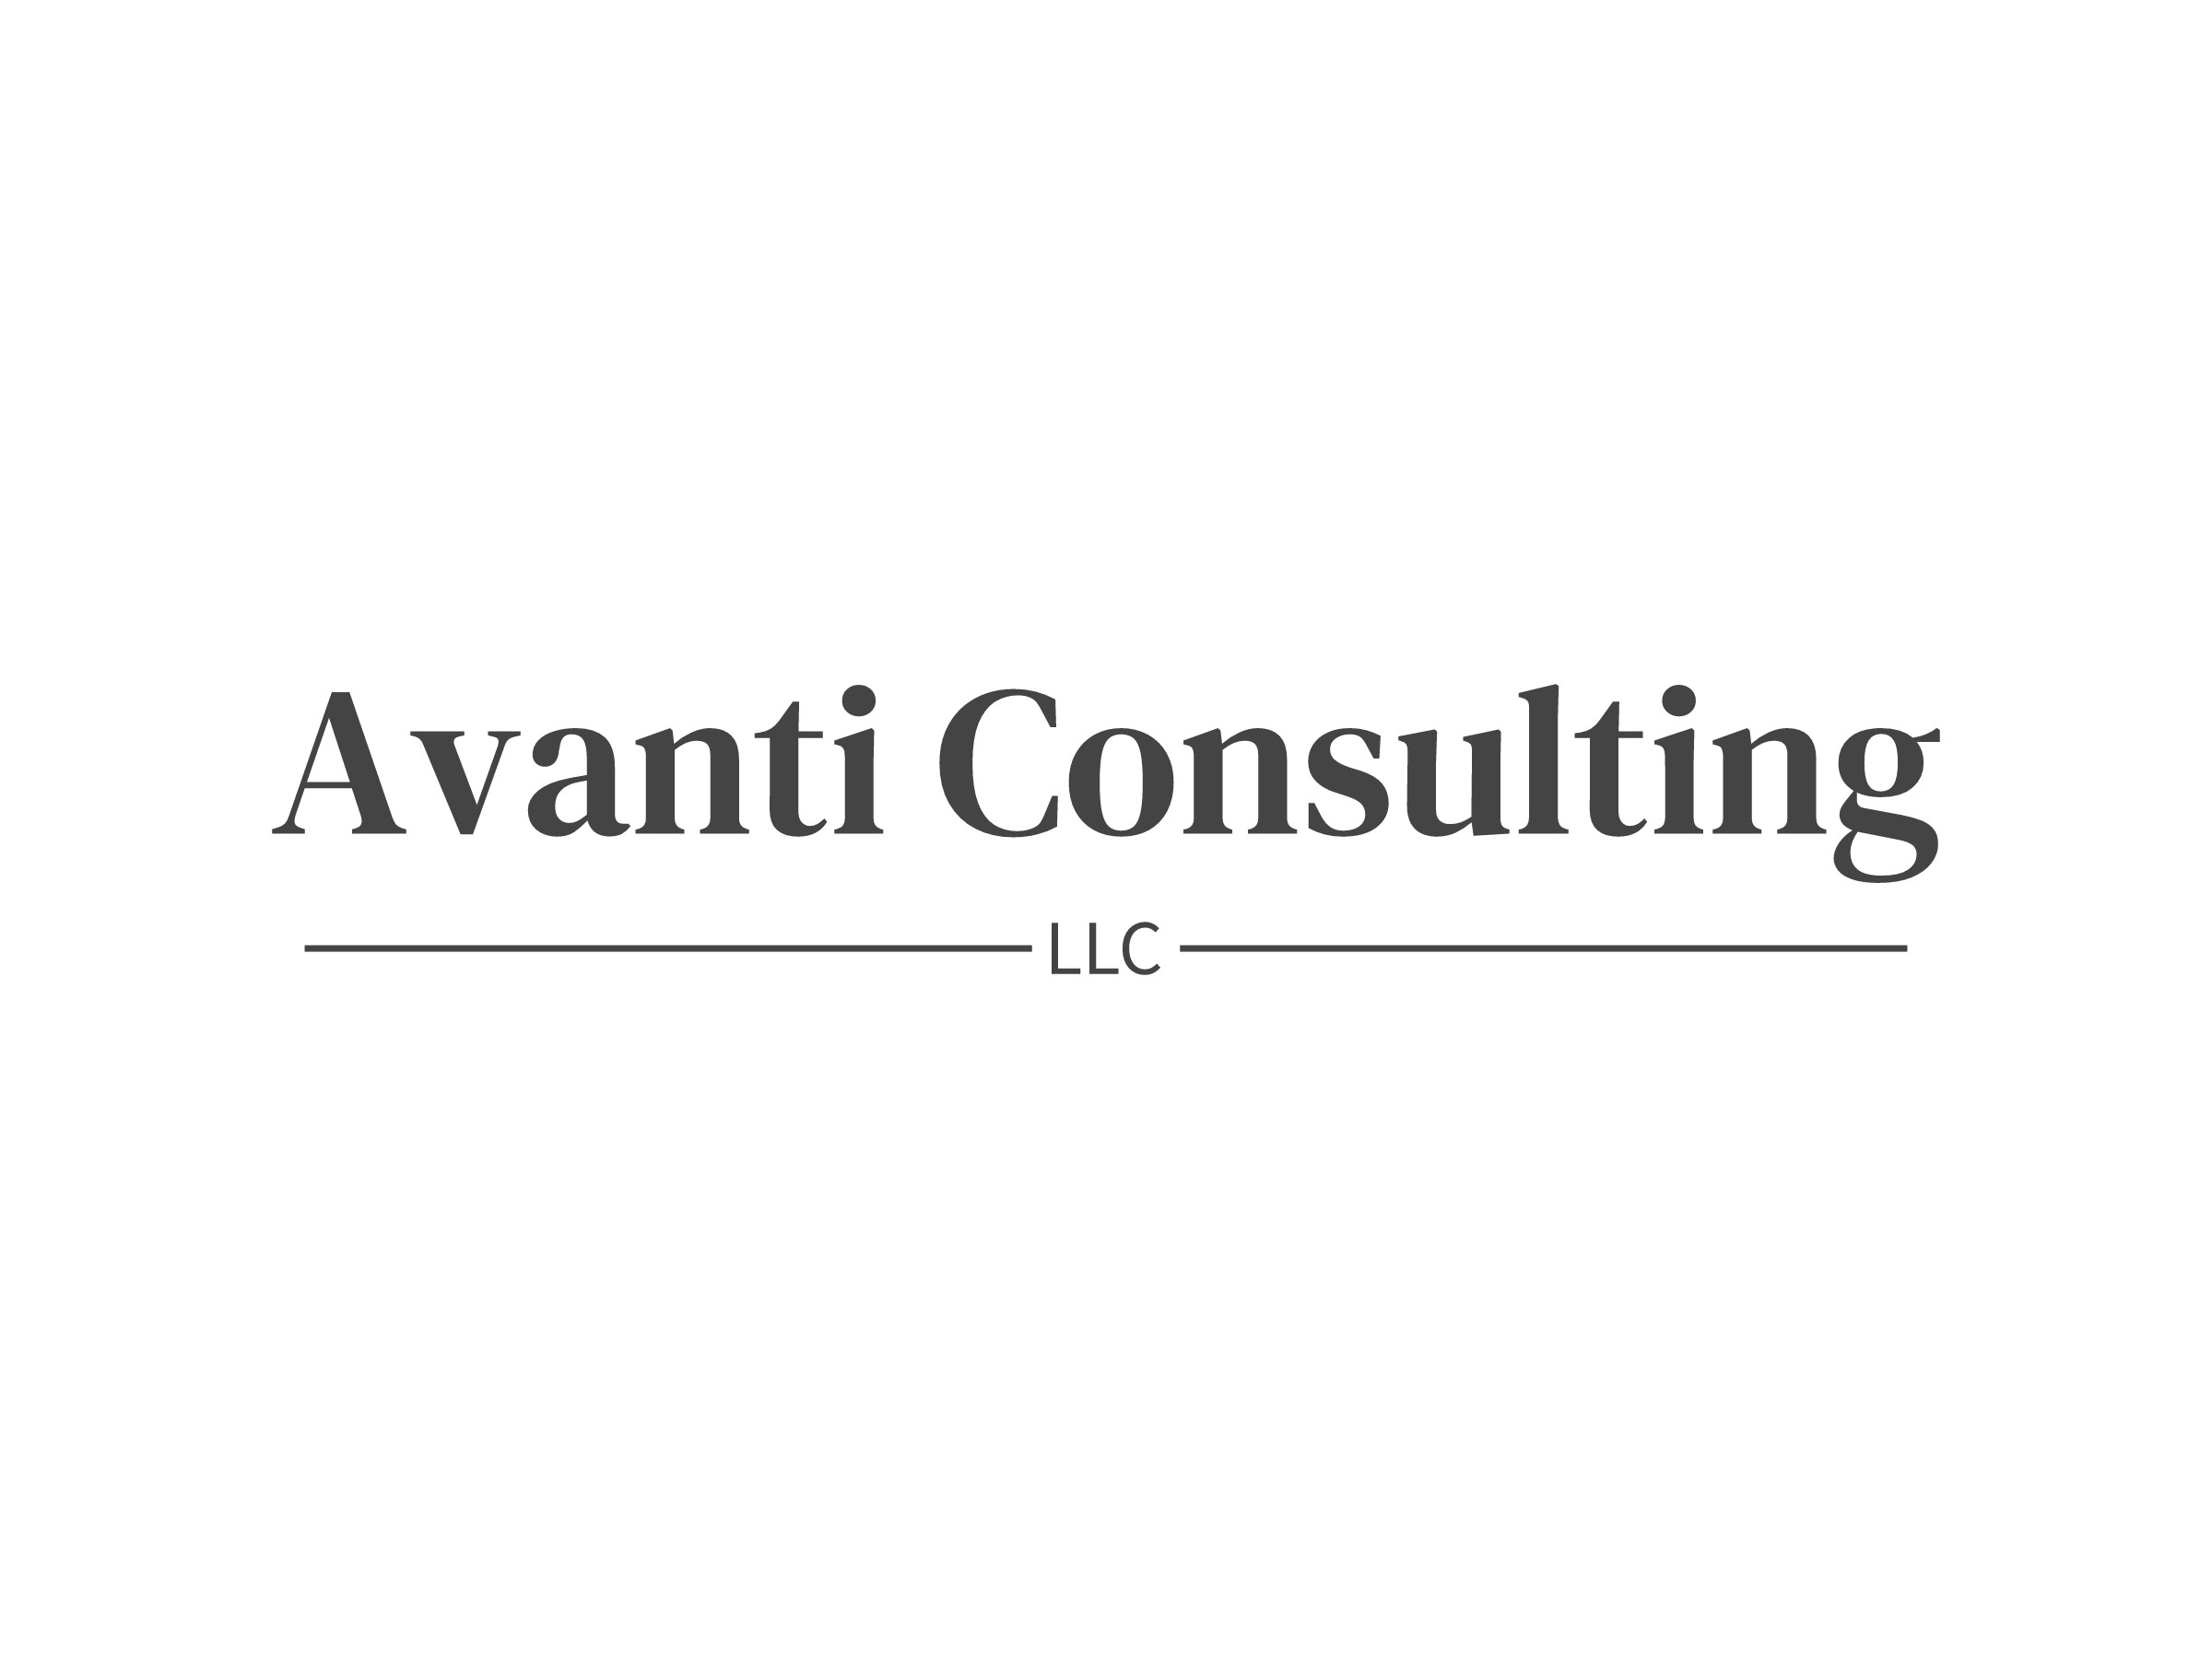 Bill Reichle - Avanti Consulting LLC